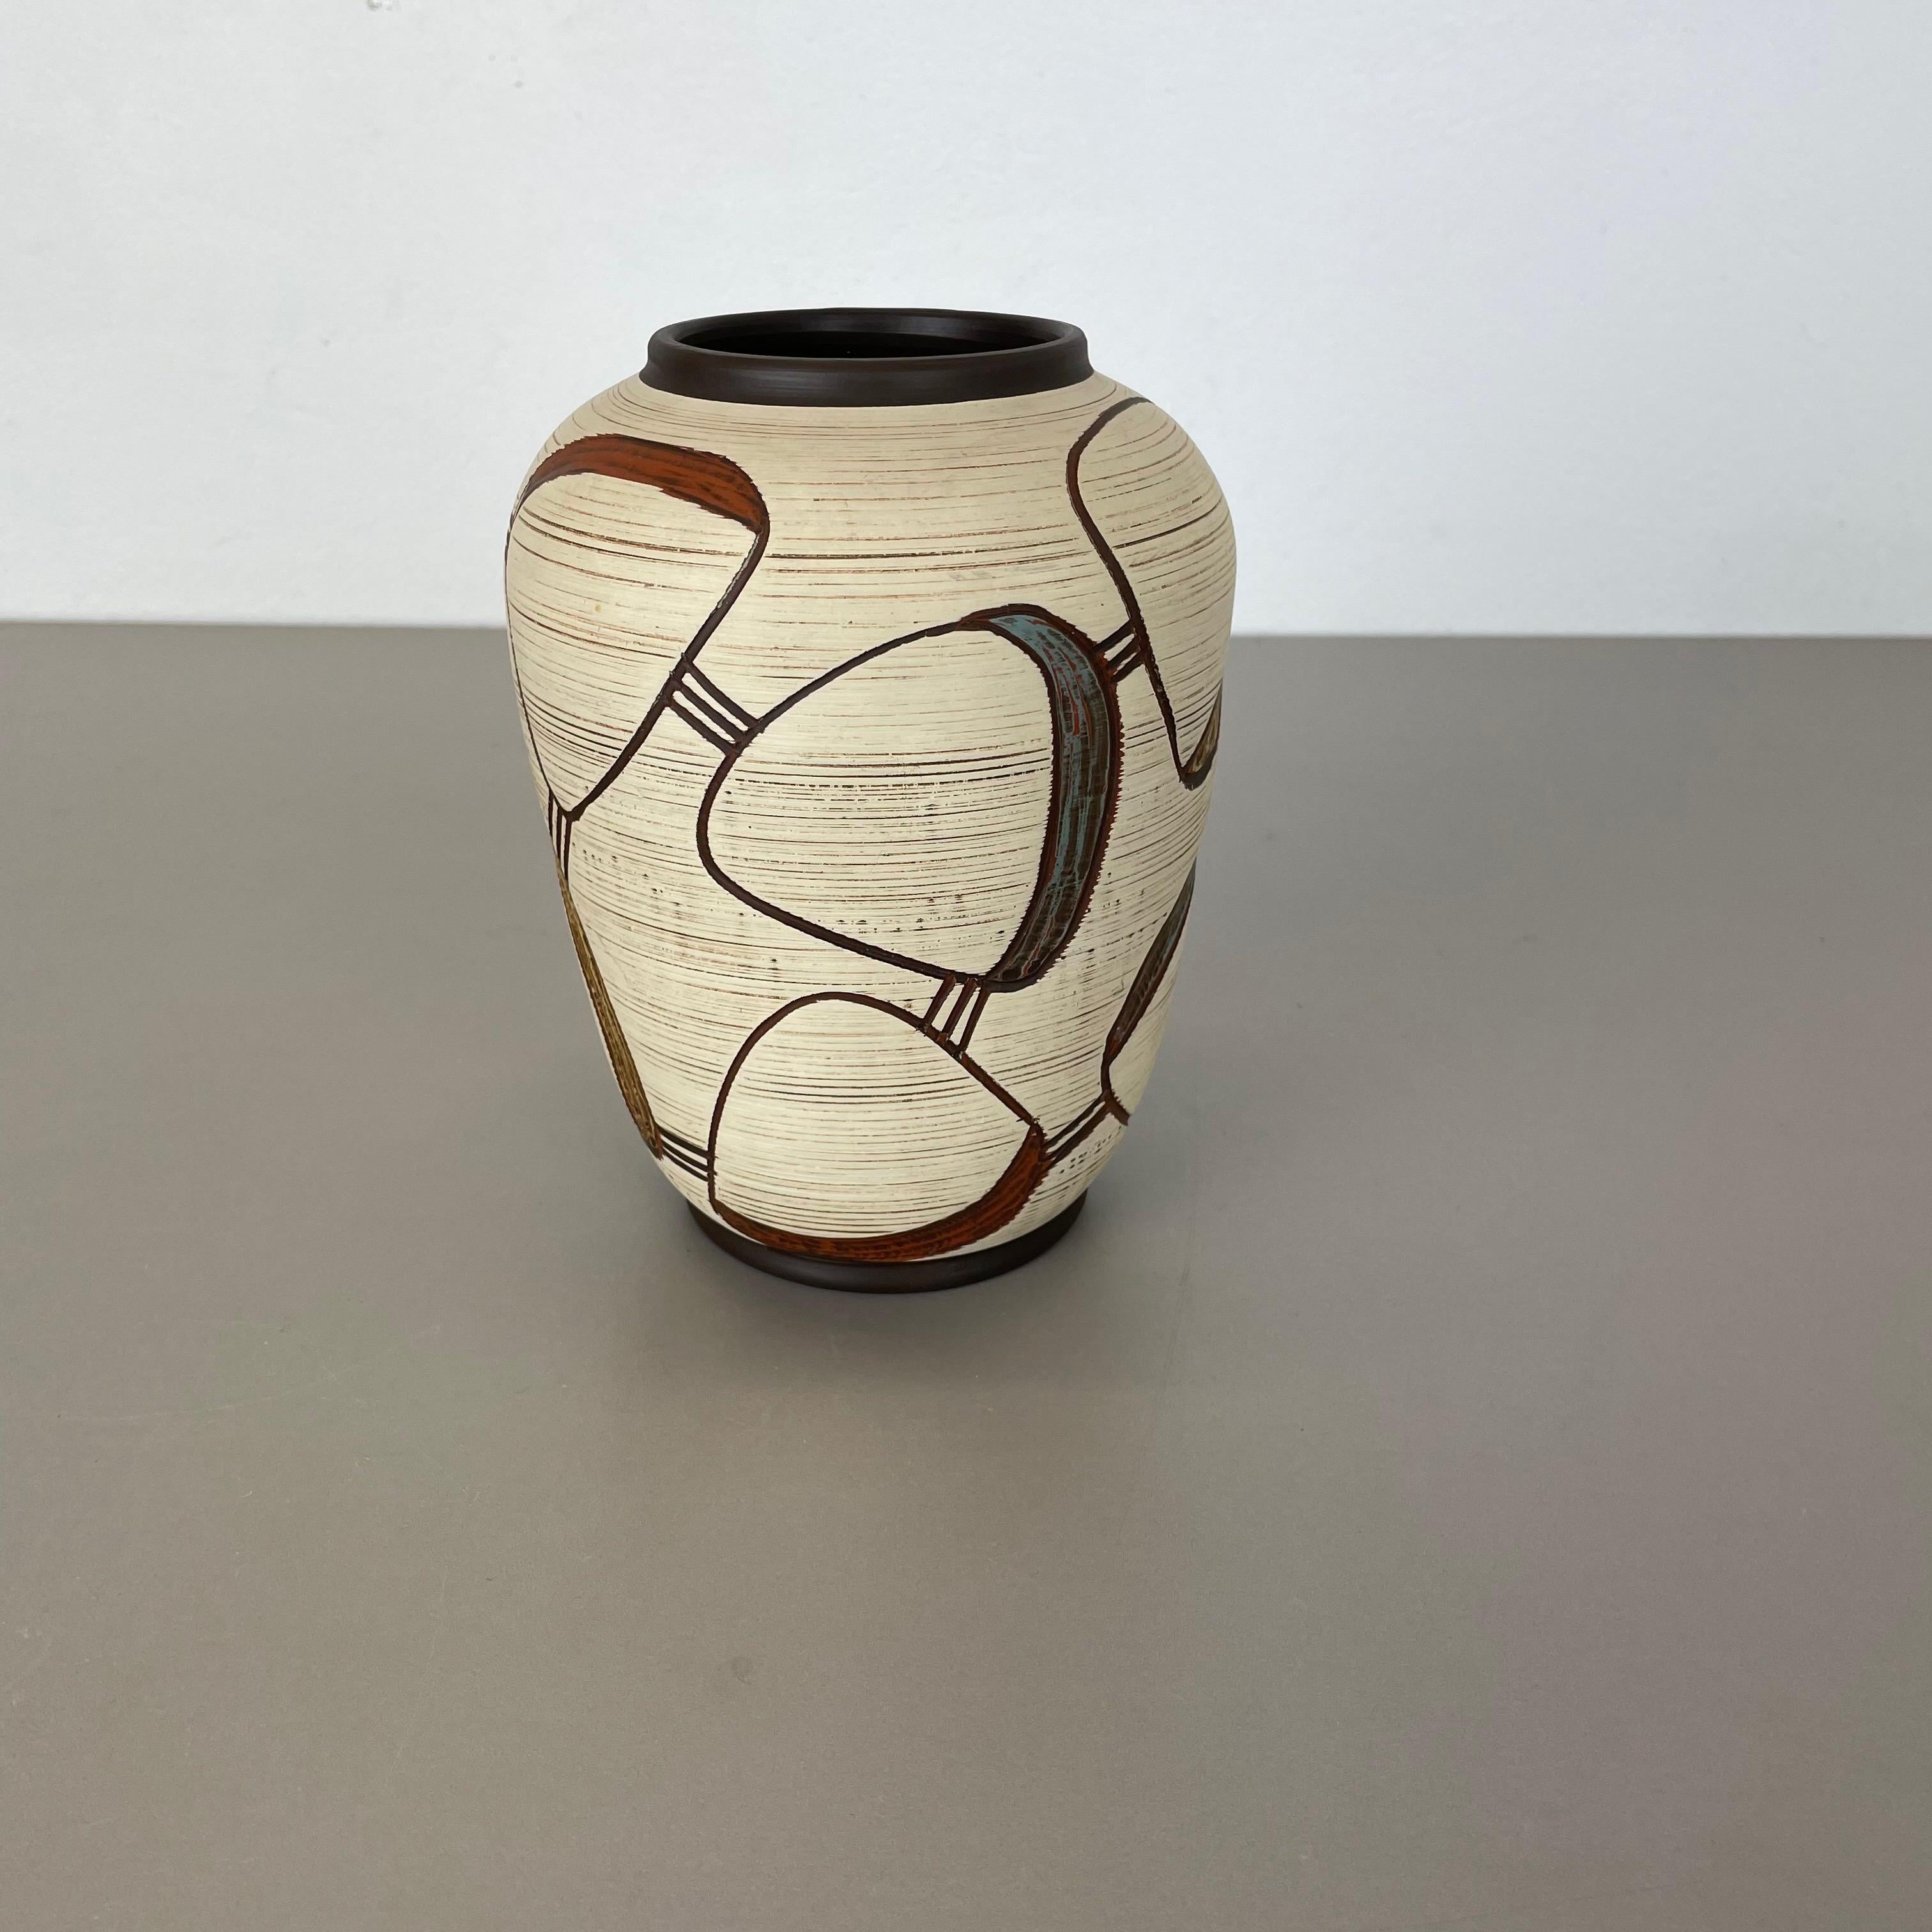 Artikel:

Vase aus Keramik


Produzent:

Sawa Ceramic, Deutschland


Design/One:

Franz Schwaderlapp



Jahrzehnt:

1950s



Beschreibung:

Original Vintage 1950er Keramik Vase in Deutschland. Hochwertige deutsche Produktion